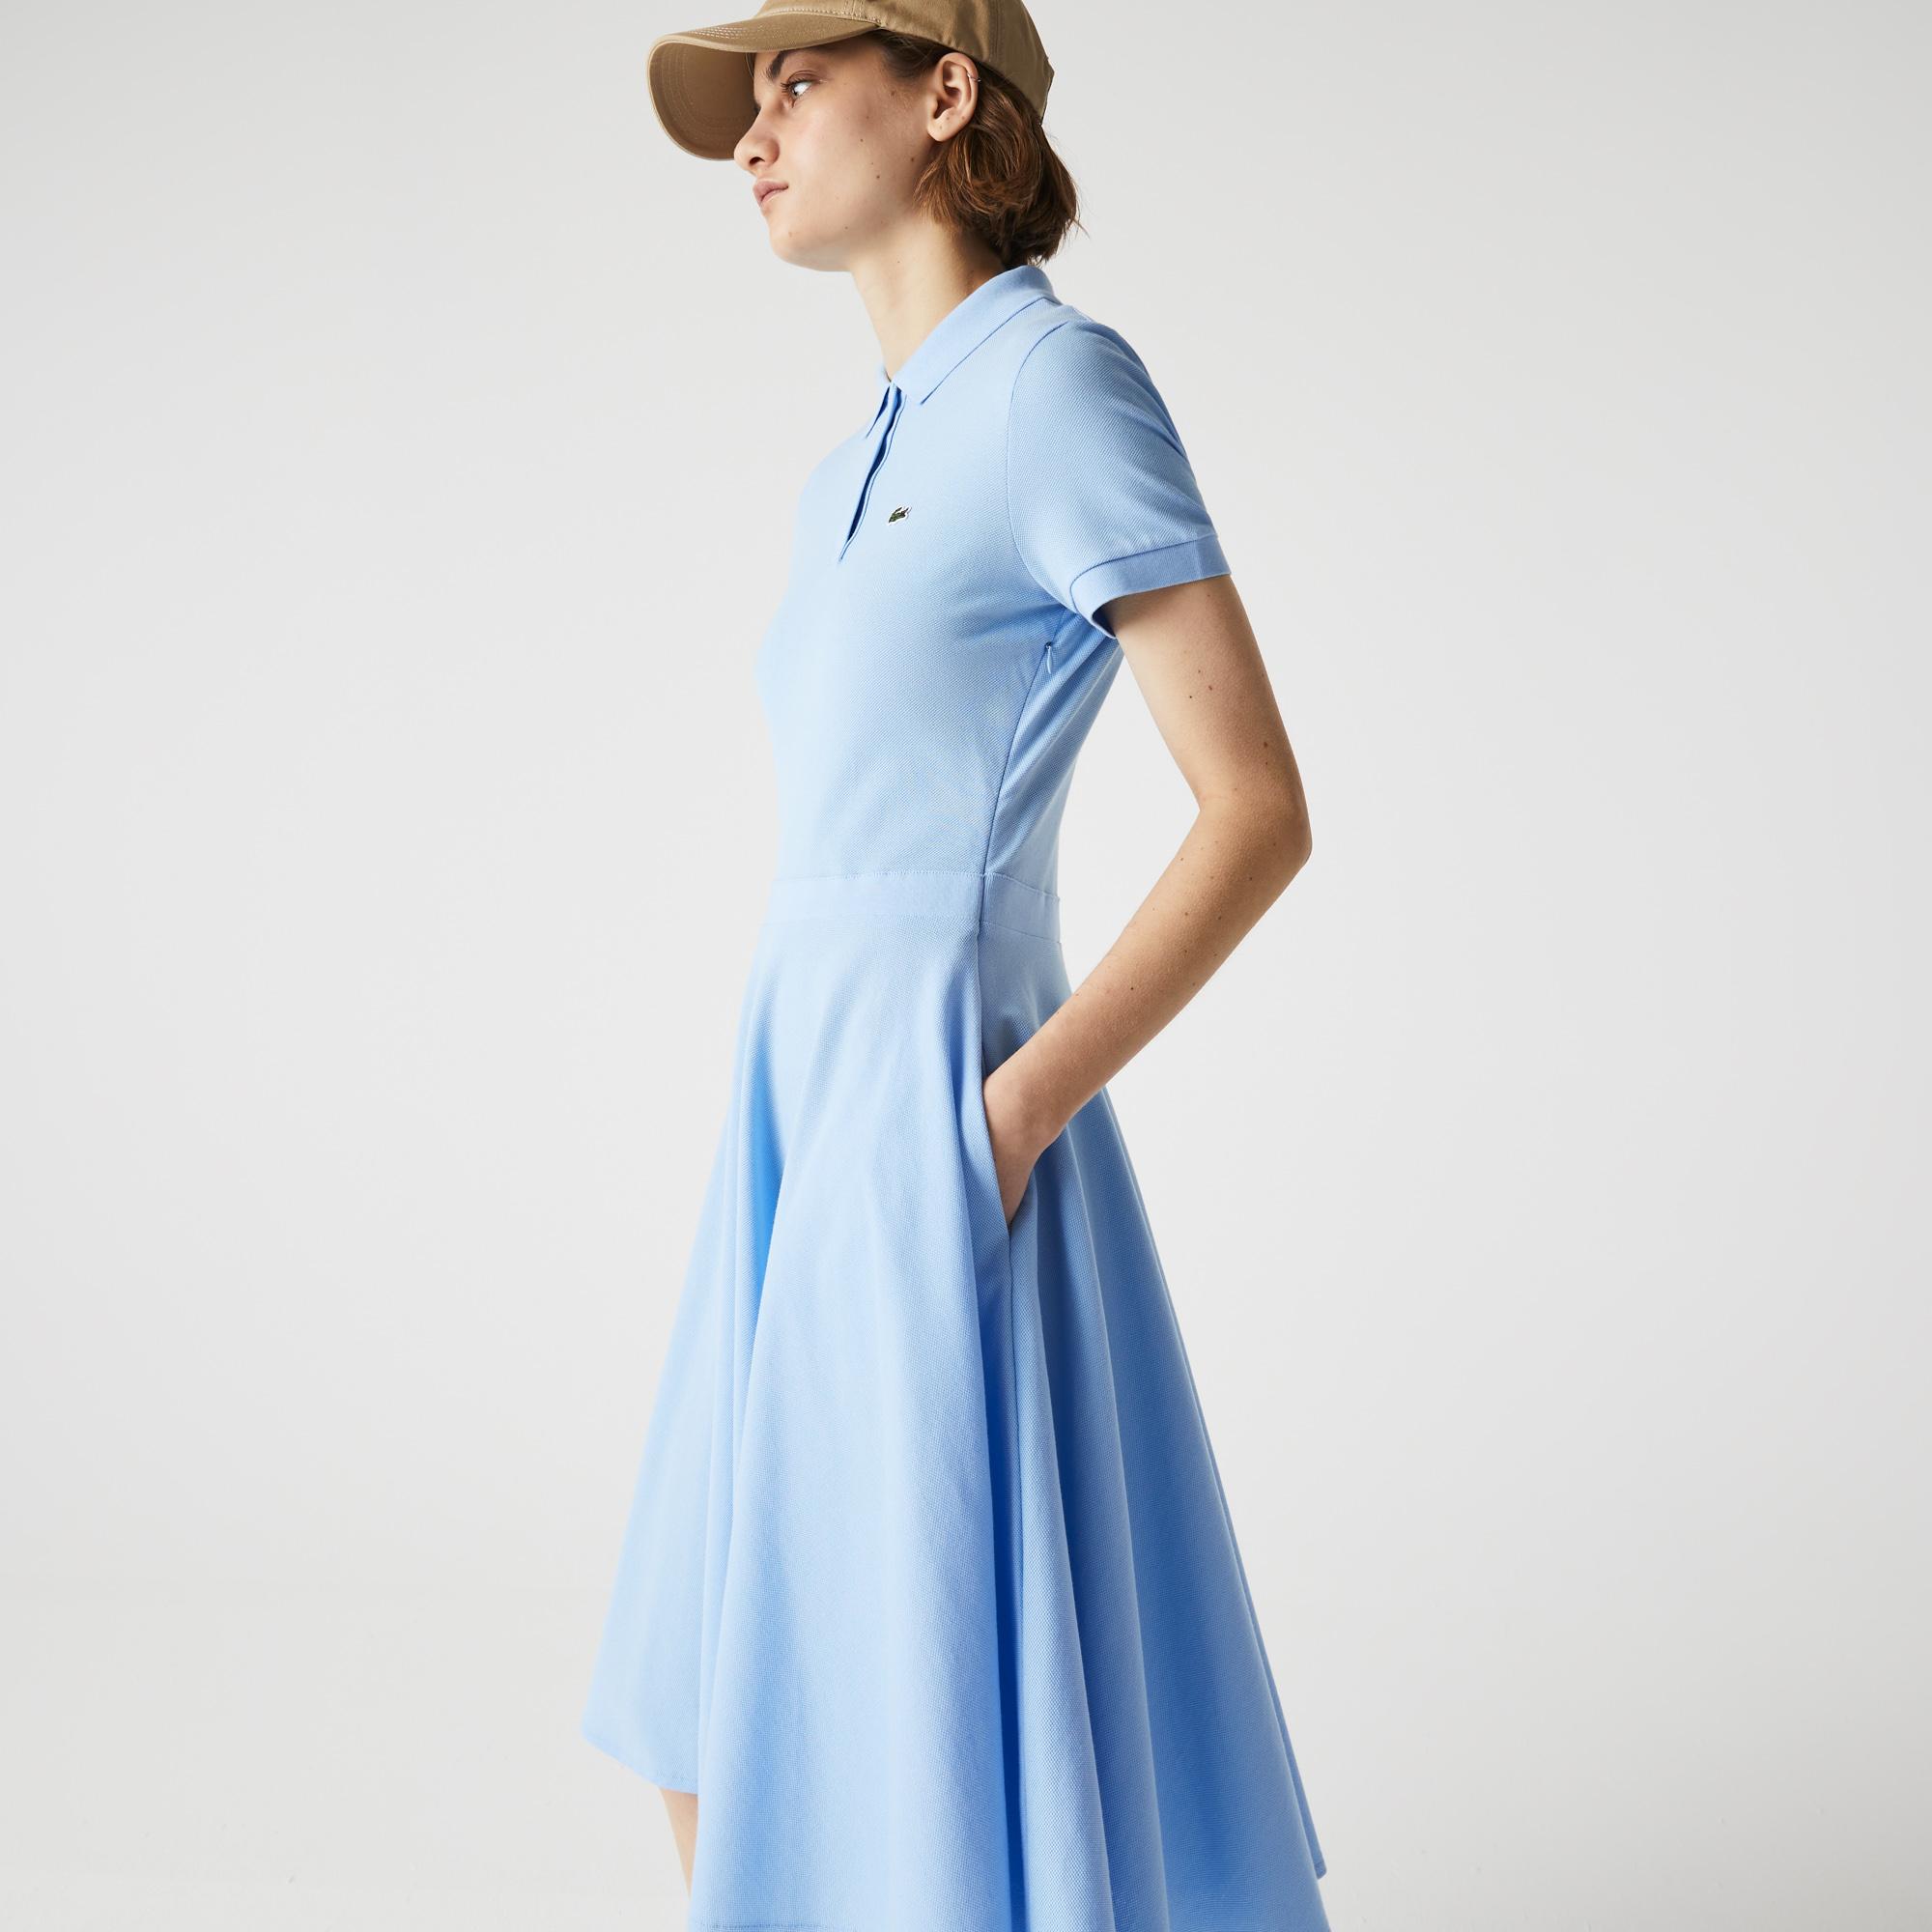 Lacoste Kadın Loose Fit Kısa Kollu Polo Yaka Mavi Elbise. 3